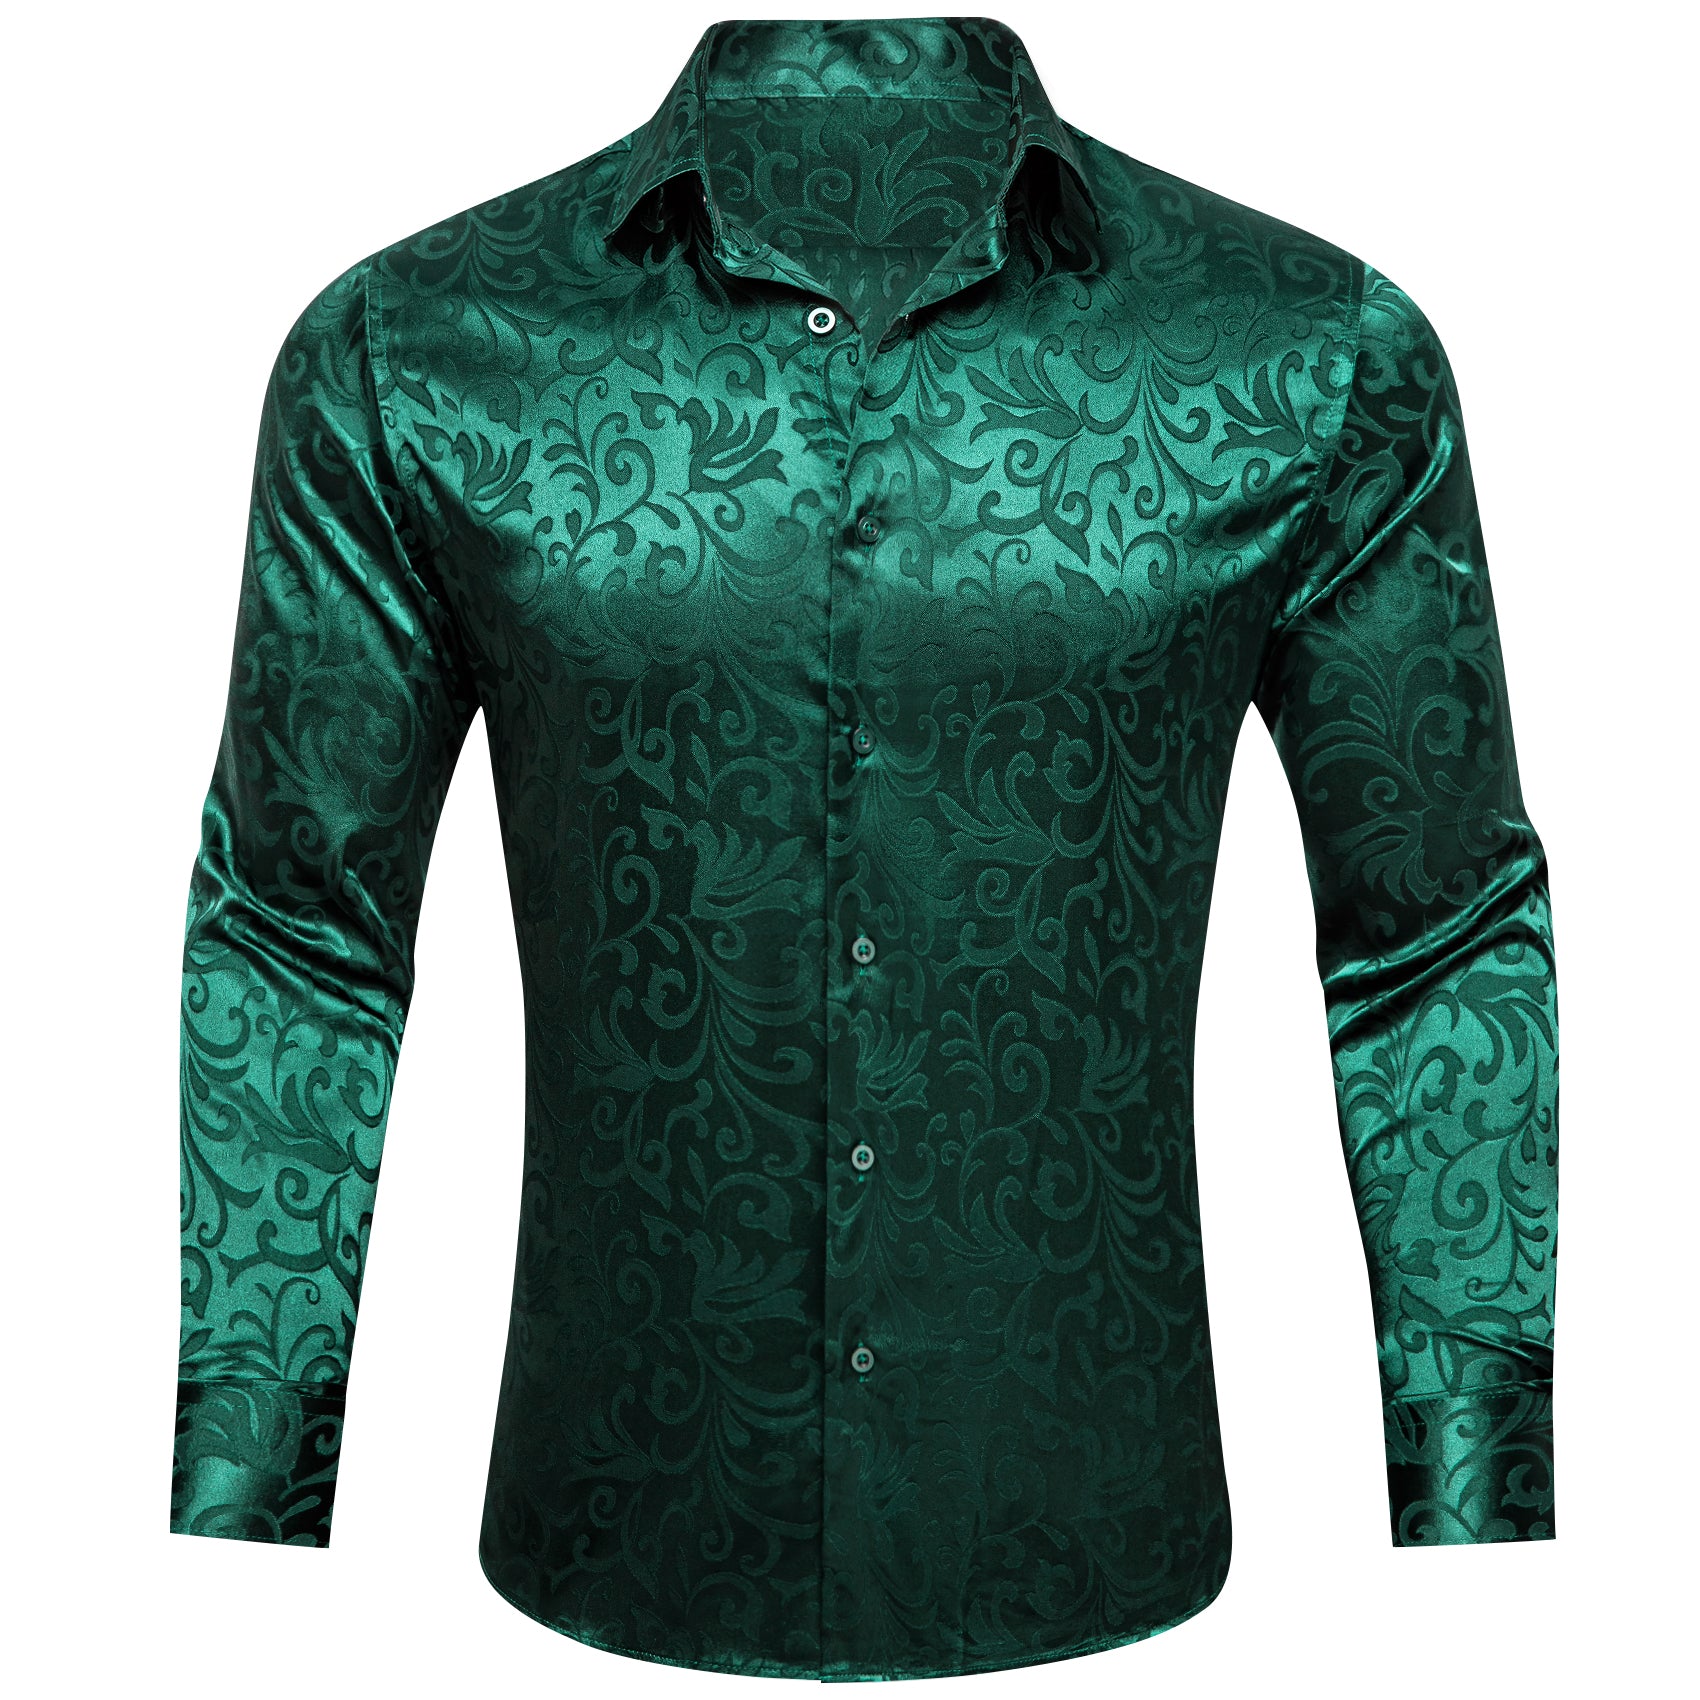 Barry.wang Dark Green Floral Silk Men's Shirt